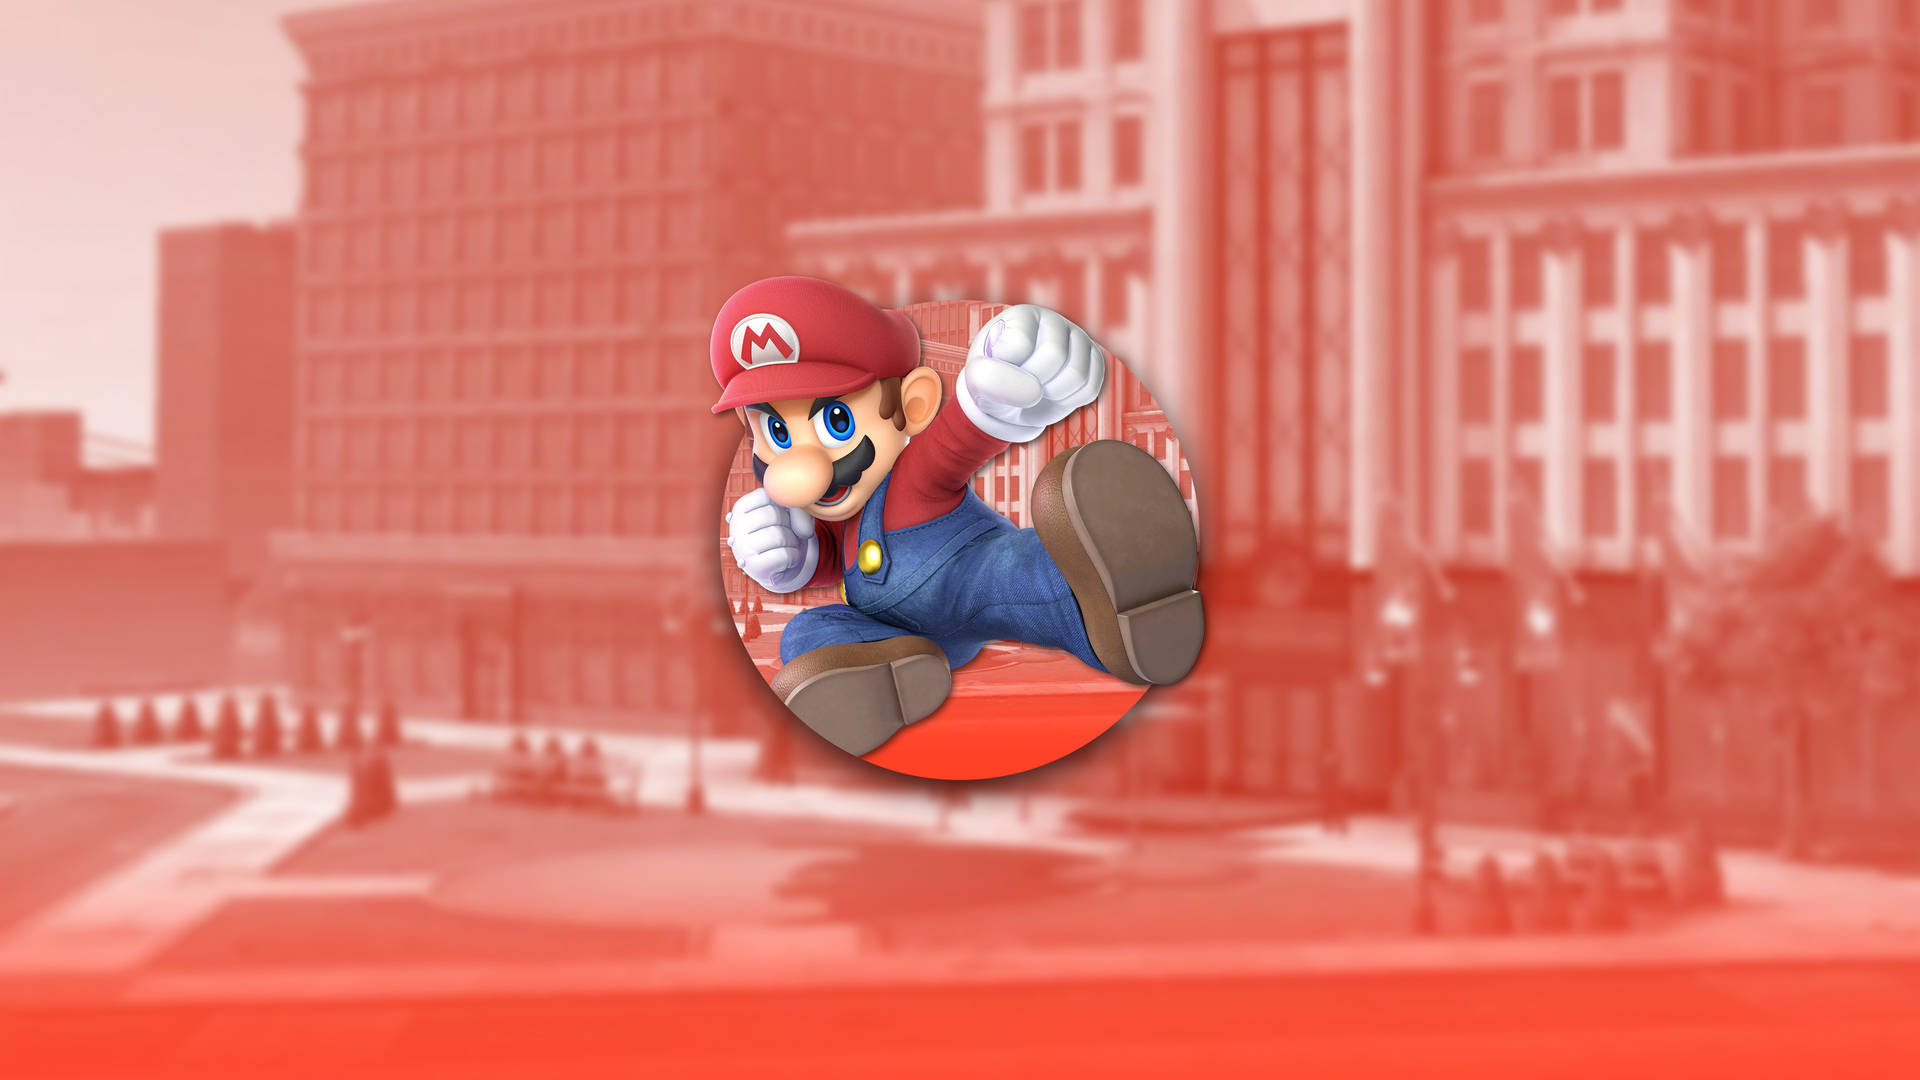 Super Mario Smash Bros Ultimate Wallpaper